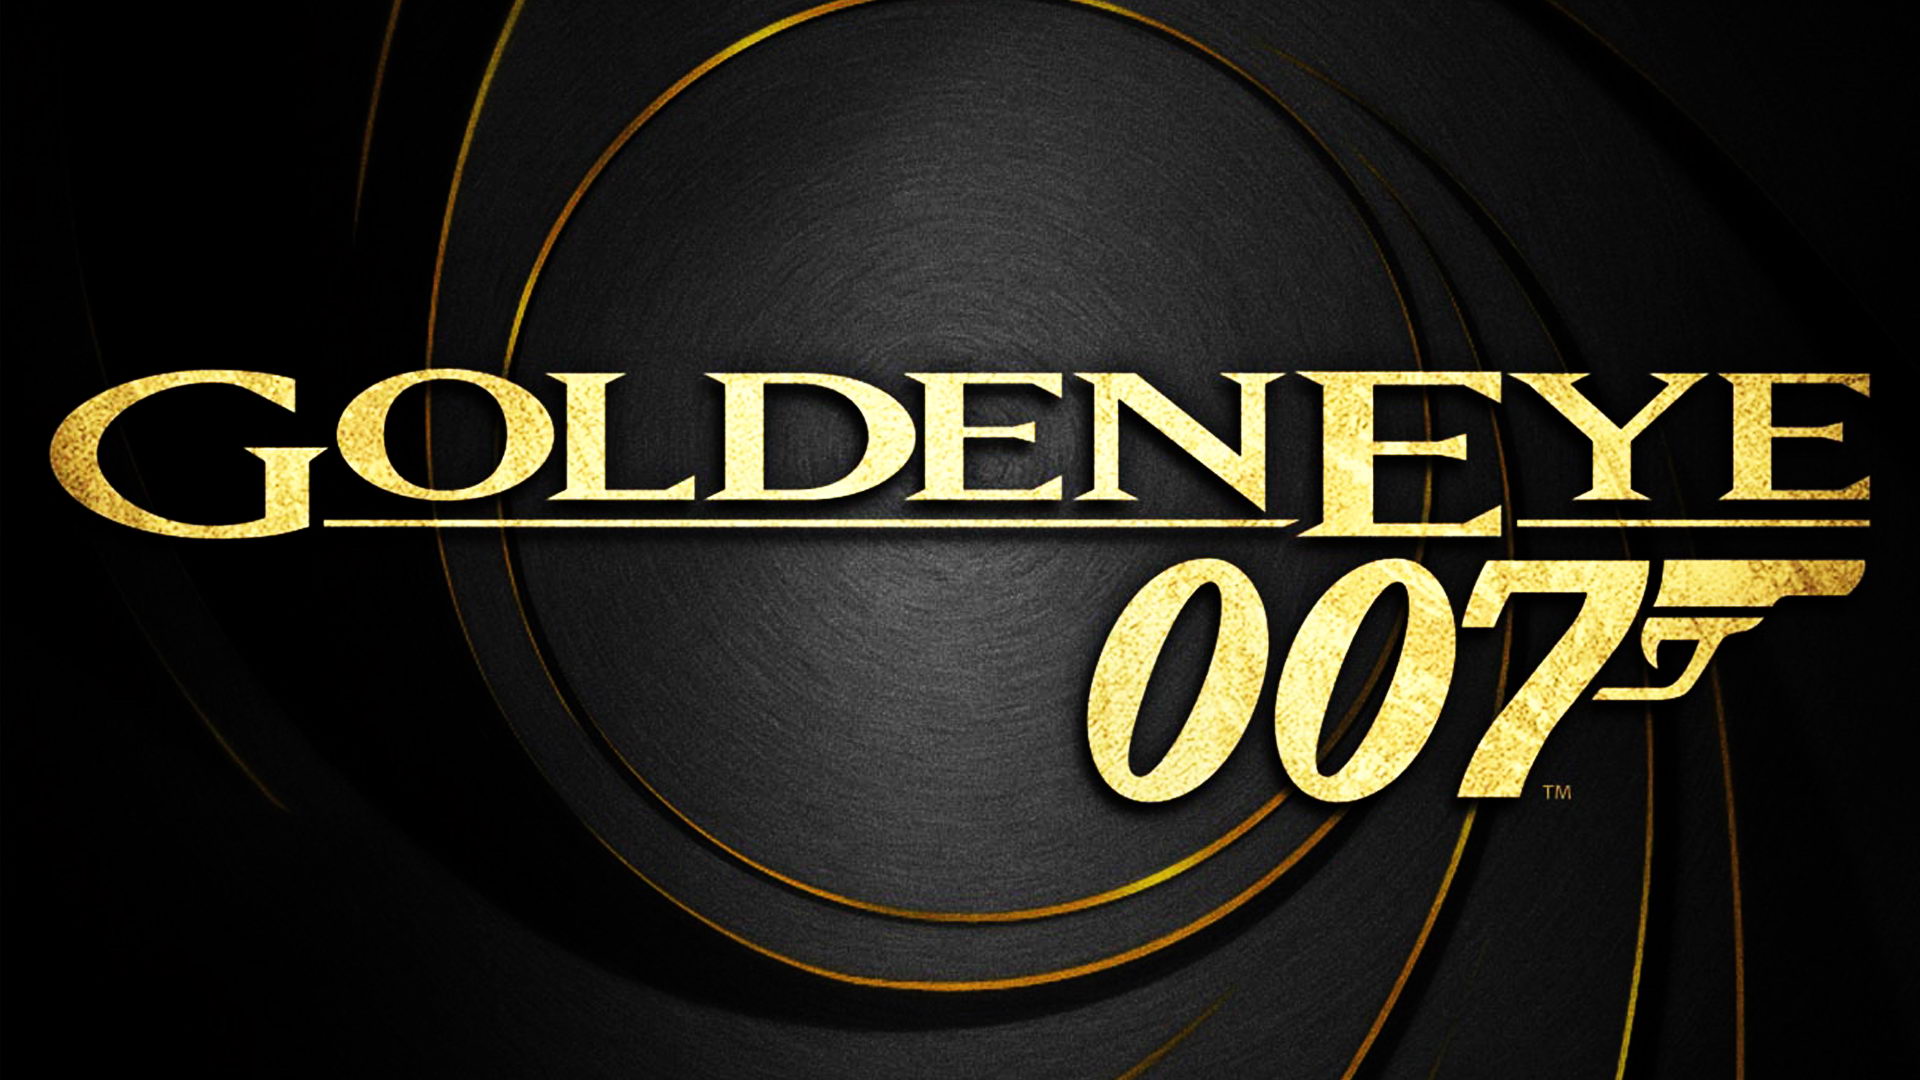 Với Goldeneye 007 Remaster, những trải nghiệm về đánh thuê của bạn sẽ được cải tiến với hình ảnh và âm thanh tuyệt vời, đặc biệt là với các tập phim Bond kinh điển trên hệ máy Nintendo Switch. Bạn sẽ không muốn bỏ lỡ trò chơi này!